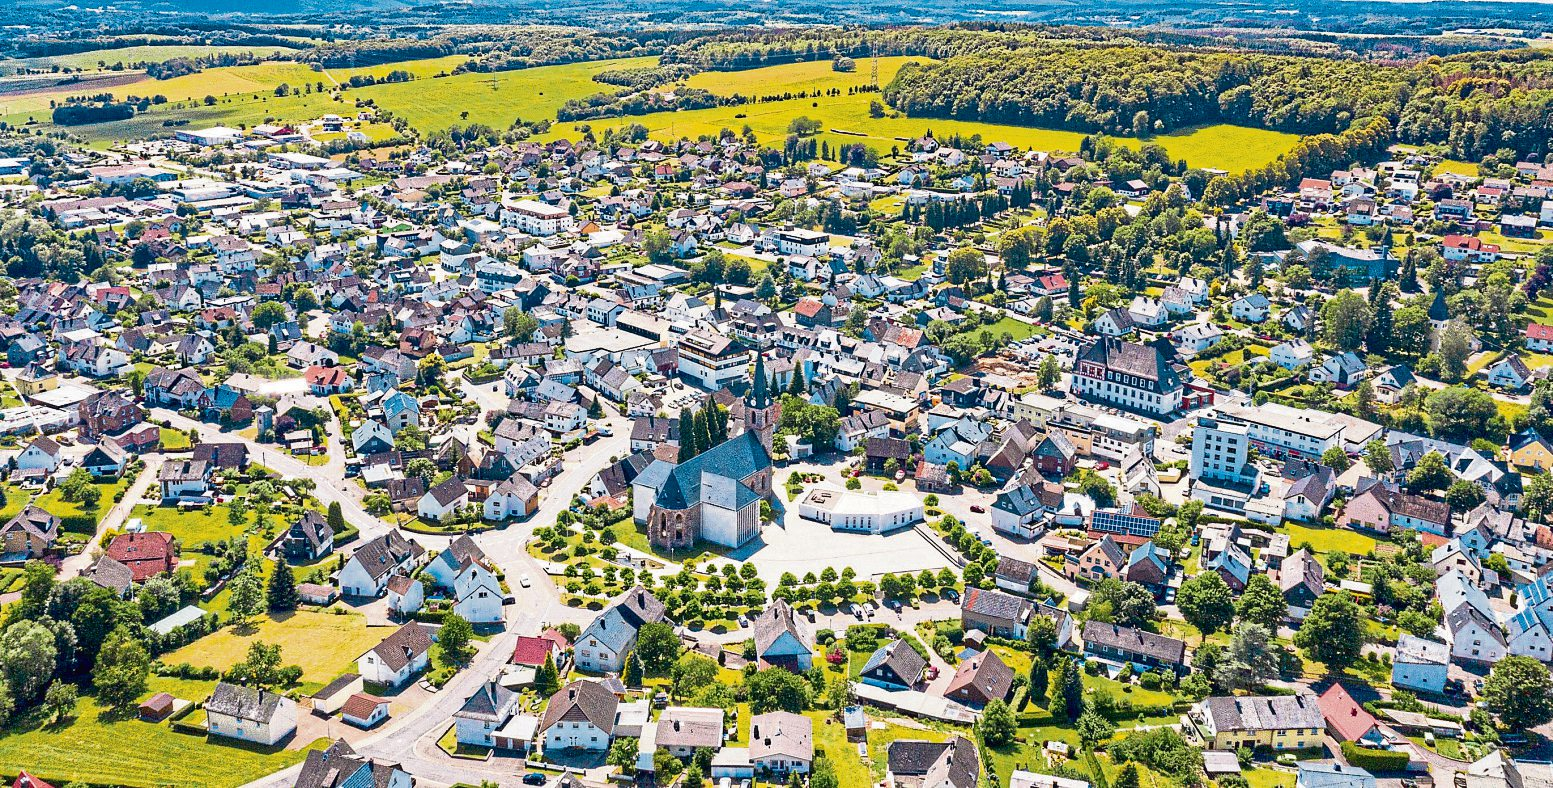 Panoramaaufnahme von Rennerod: Eine idyllische Stadt eingebettet in grüne Hügel und Wälder. Foto: Roeder-Moldenhauer